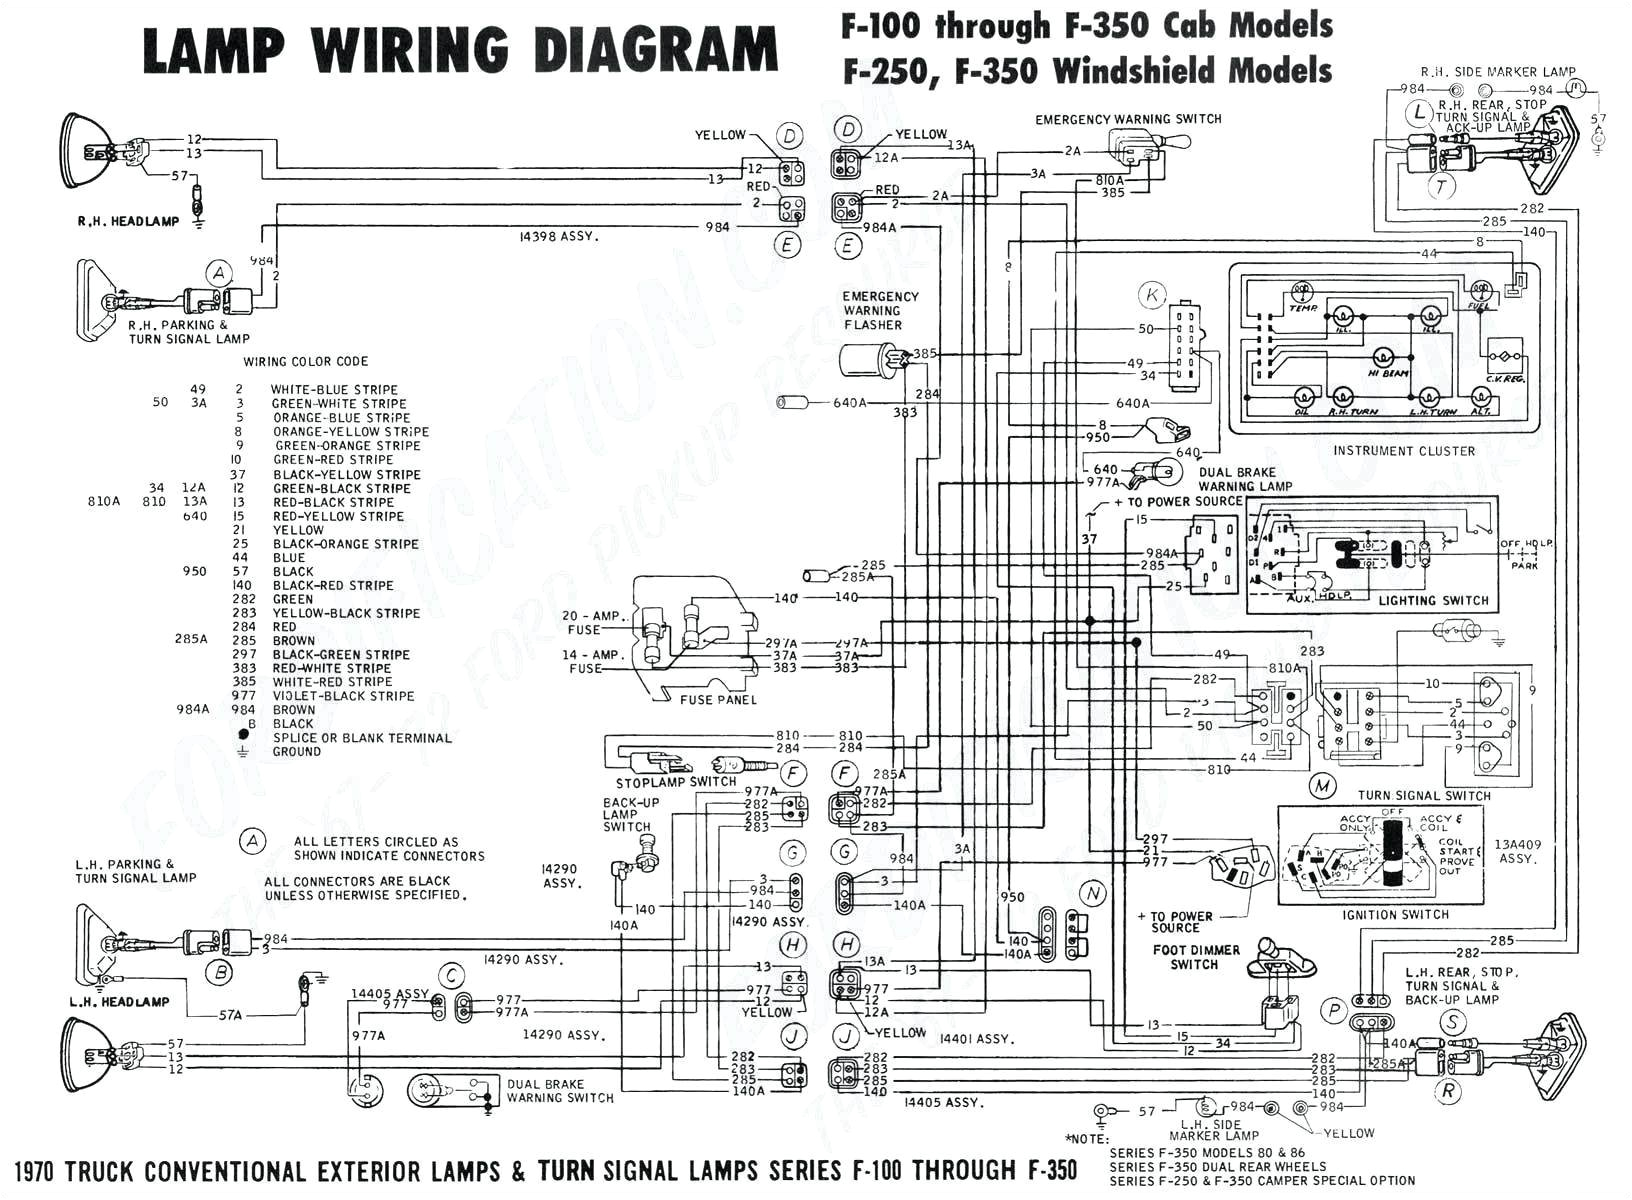 l67 wiring diagram wiring diagramlk1af wiring diagram 19